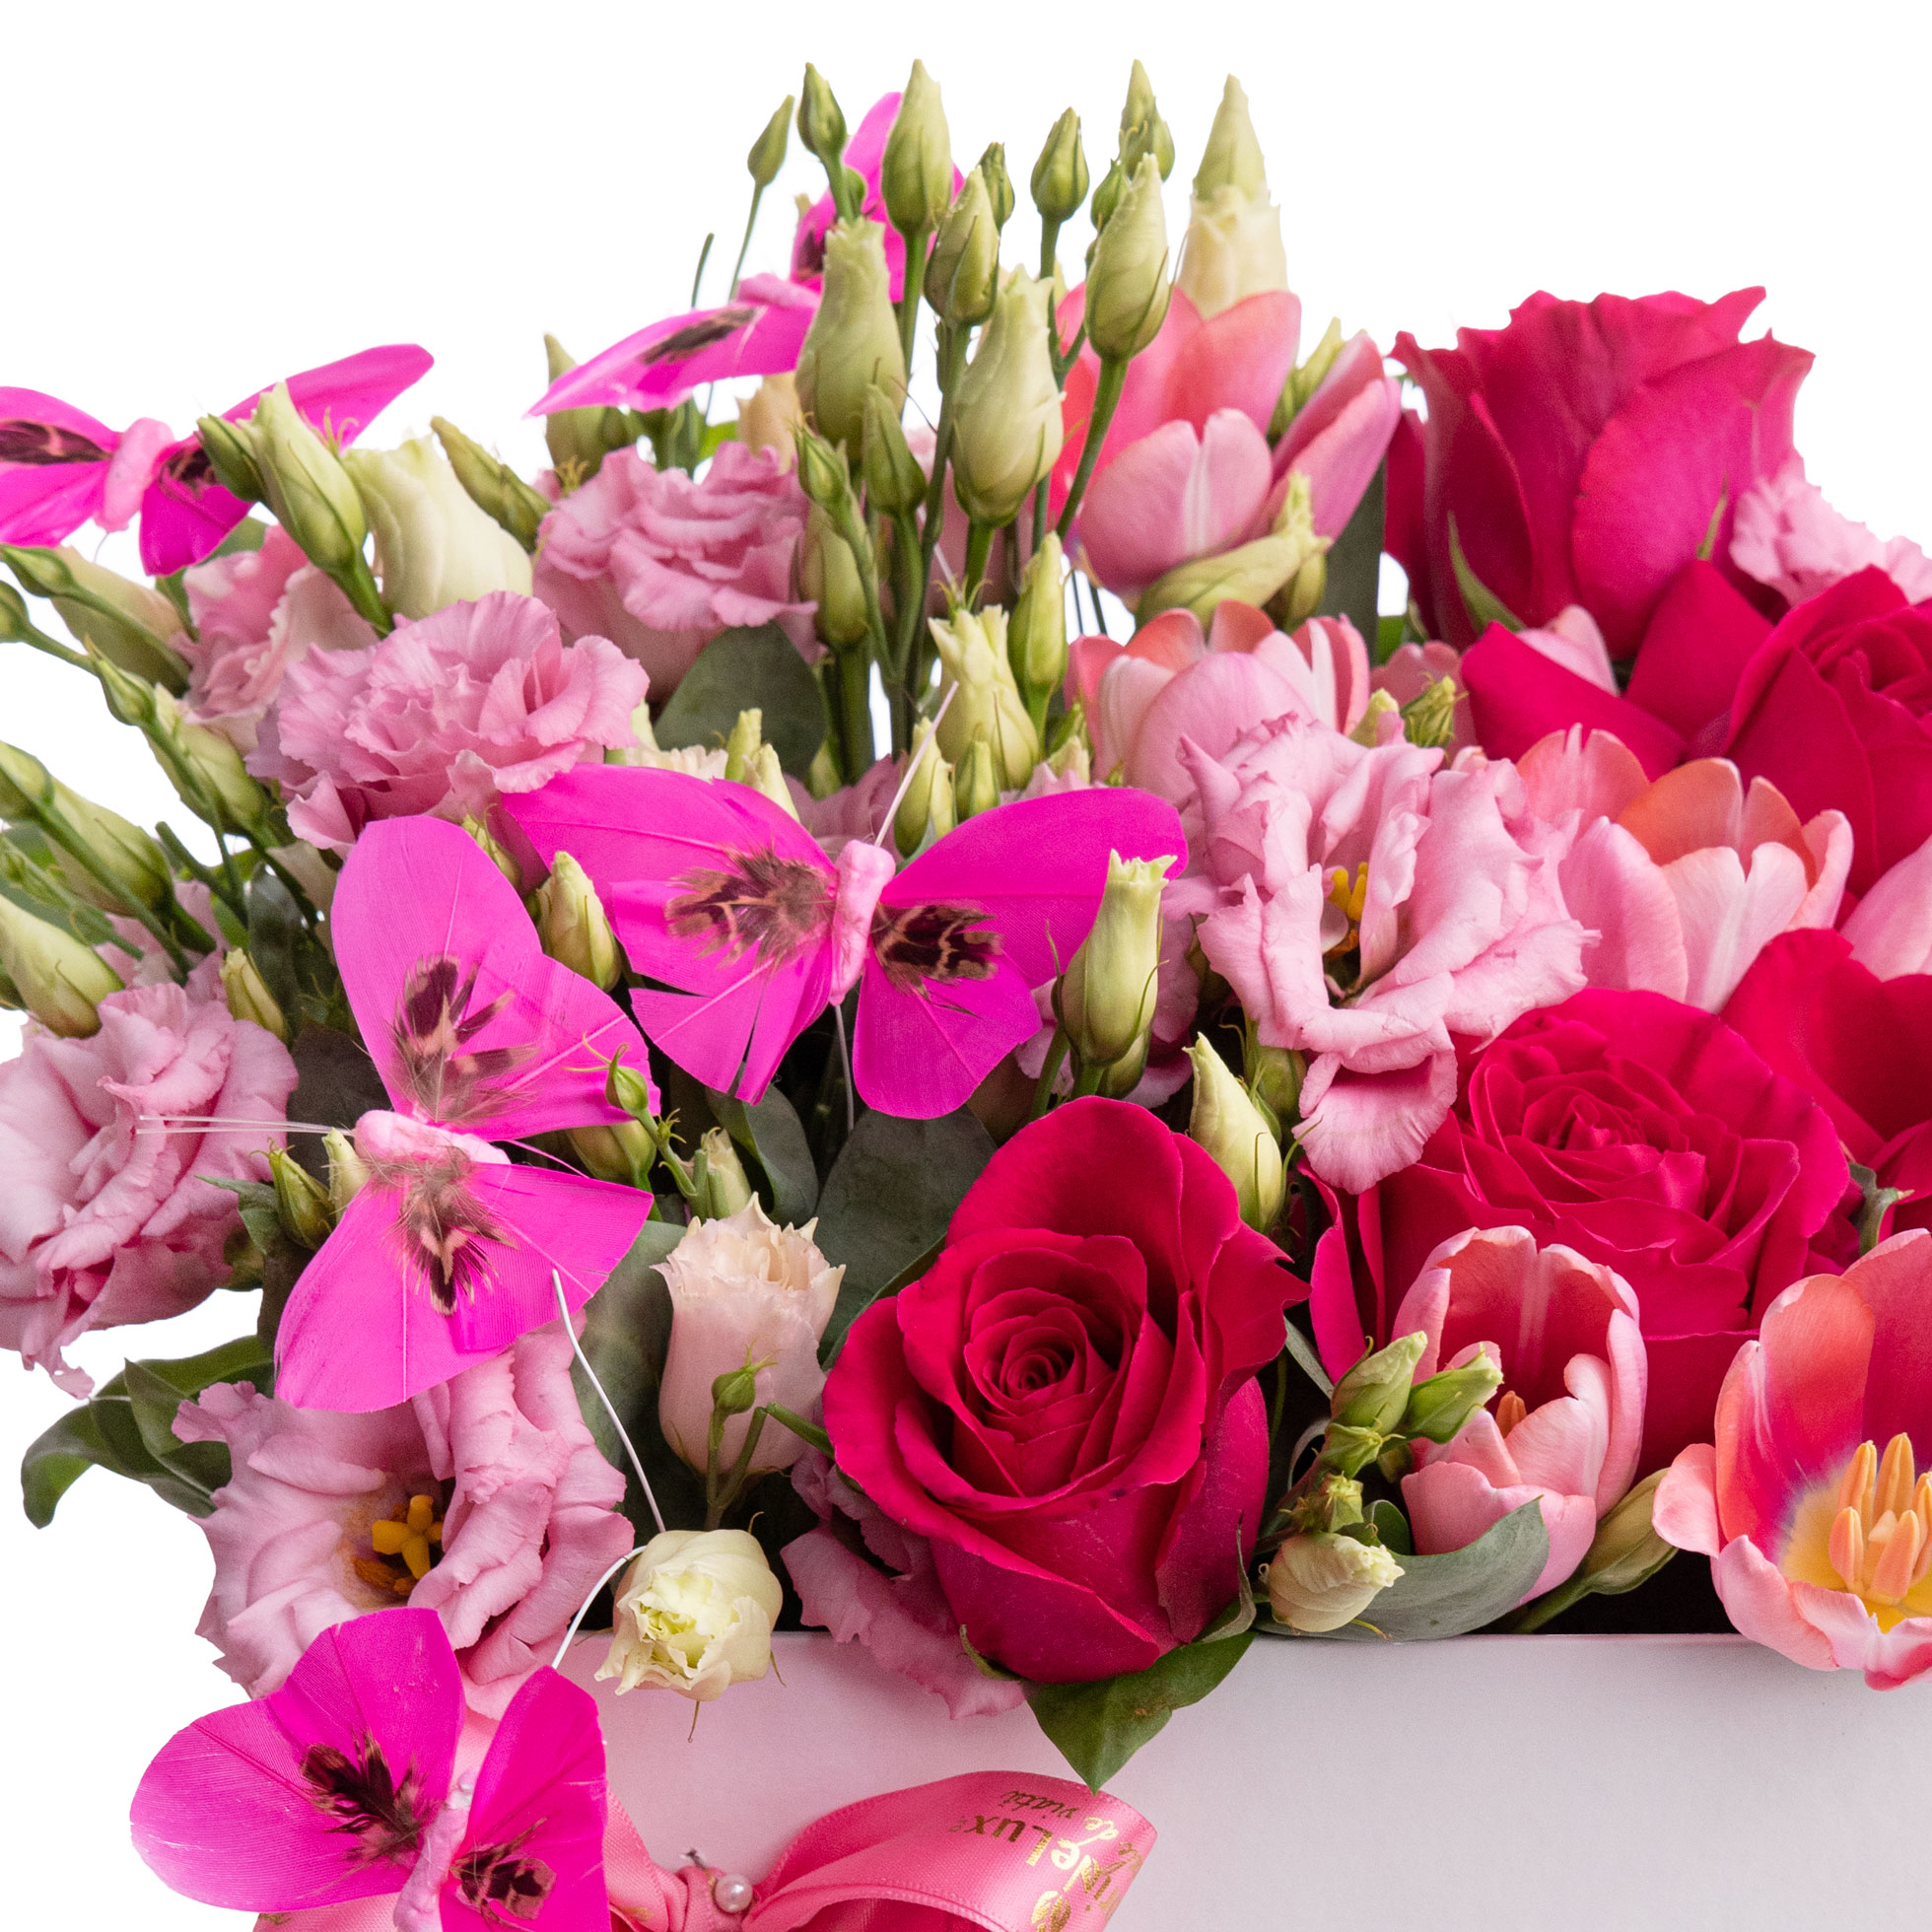 Aranjament floral in cutie cu lalele, trandafiri si fluturi colorati